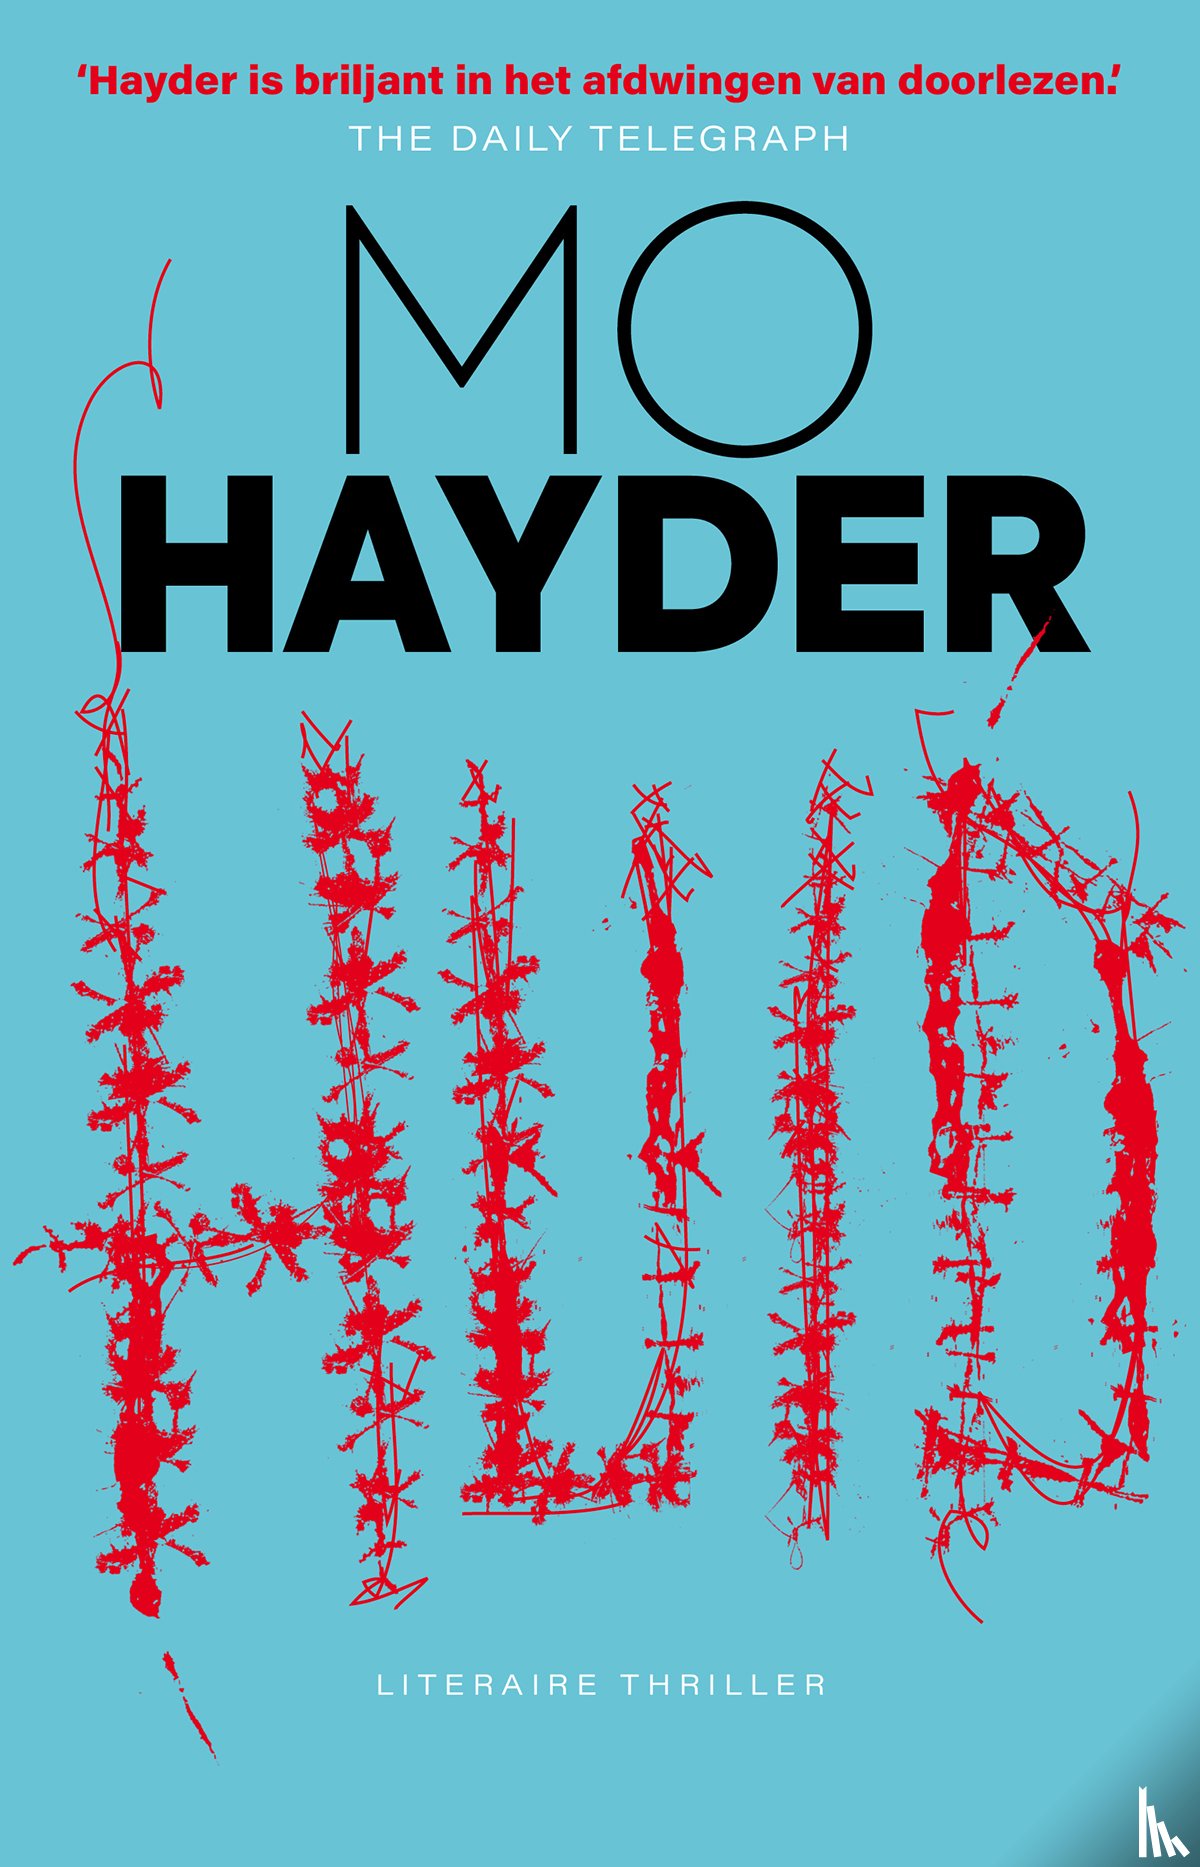 Hayder, Mo - Huid